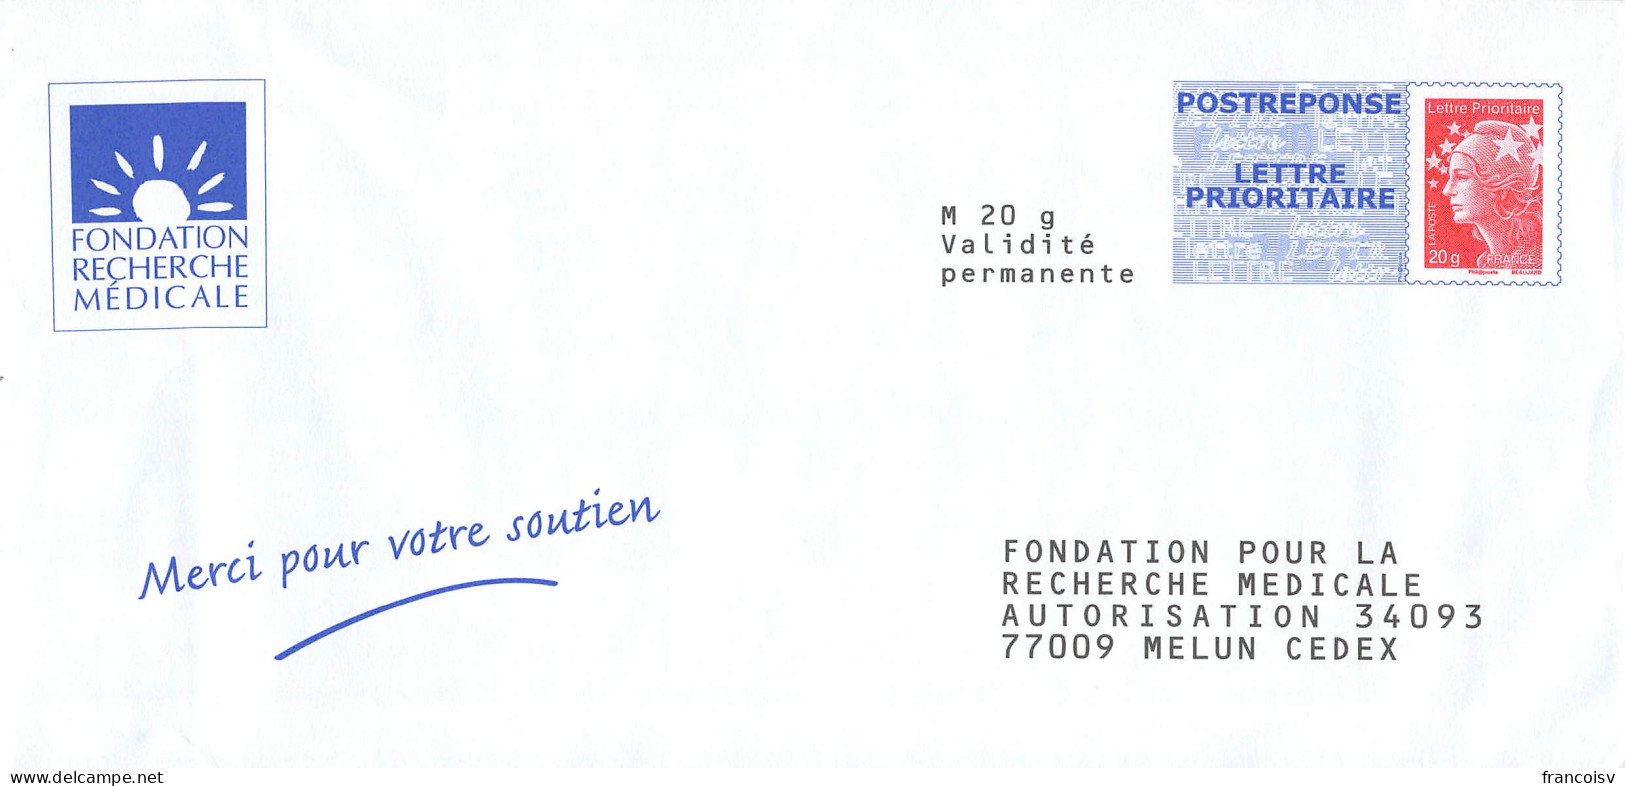 Lot de 55 enveloppes neuves PAP Prêt à poster Postreponse Marianne Ciappa kawena beaujard luquet lamouche... L3